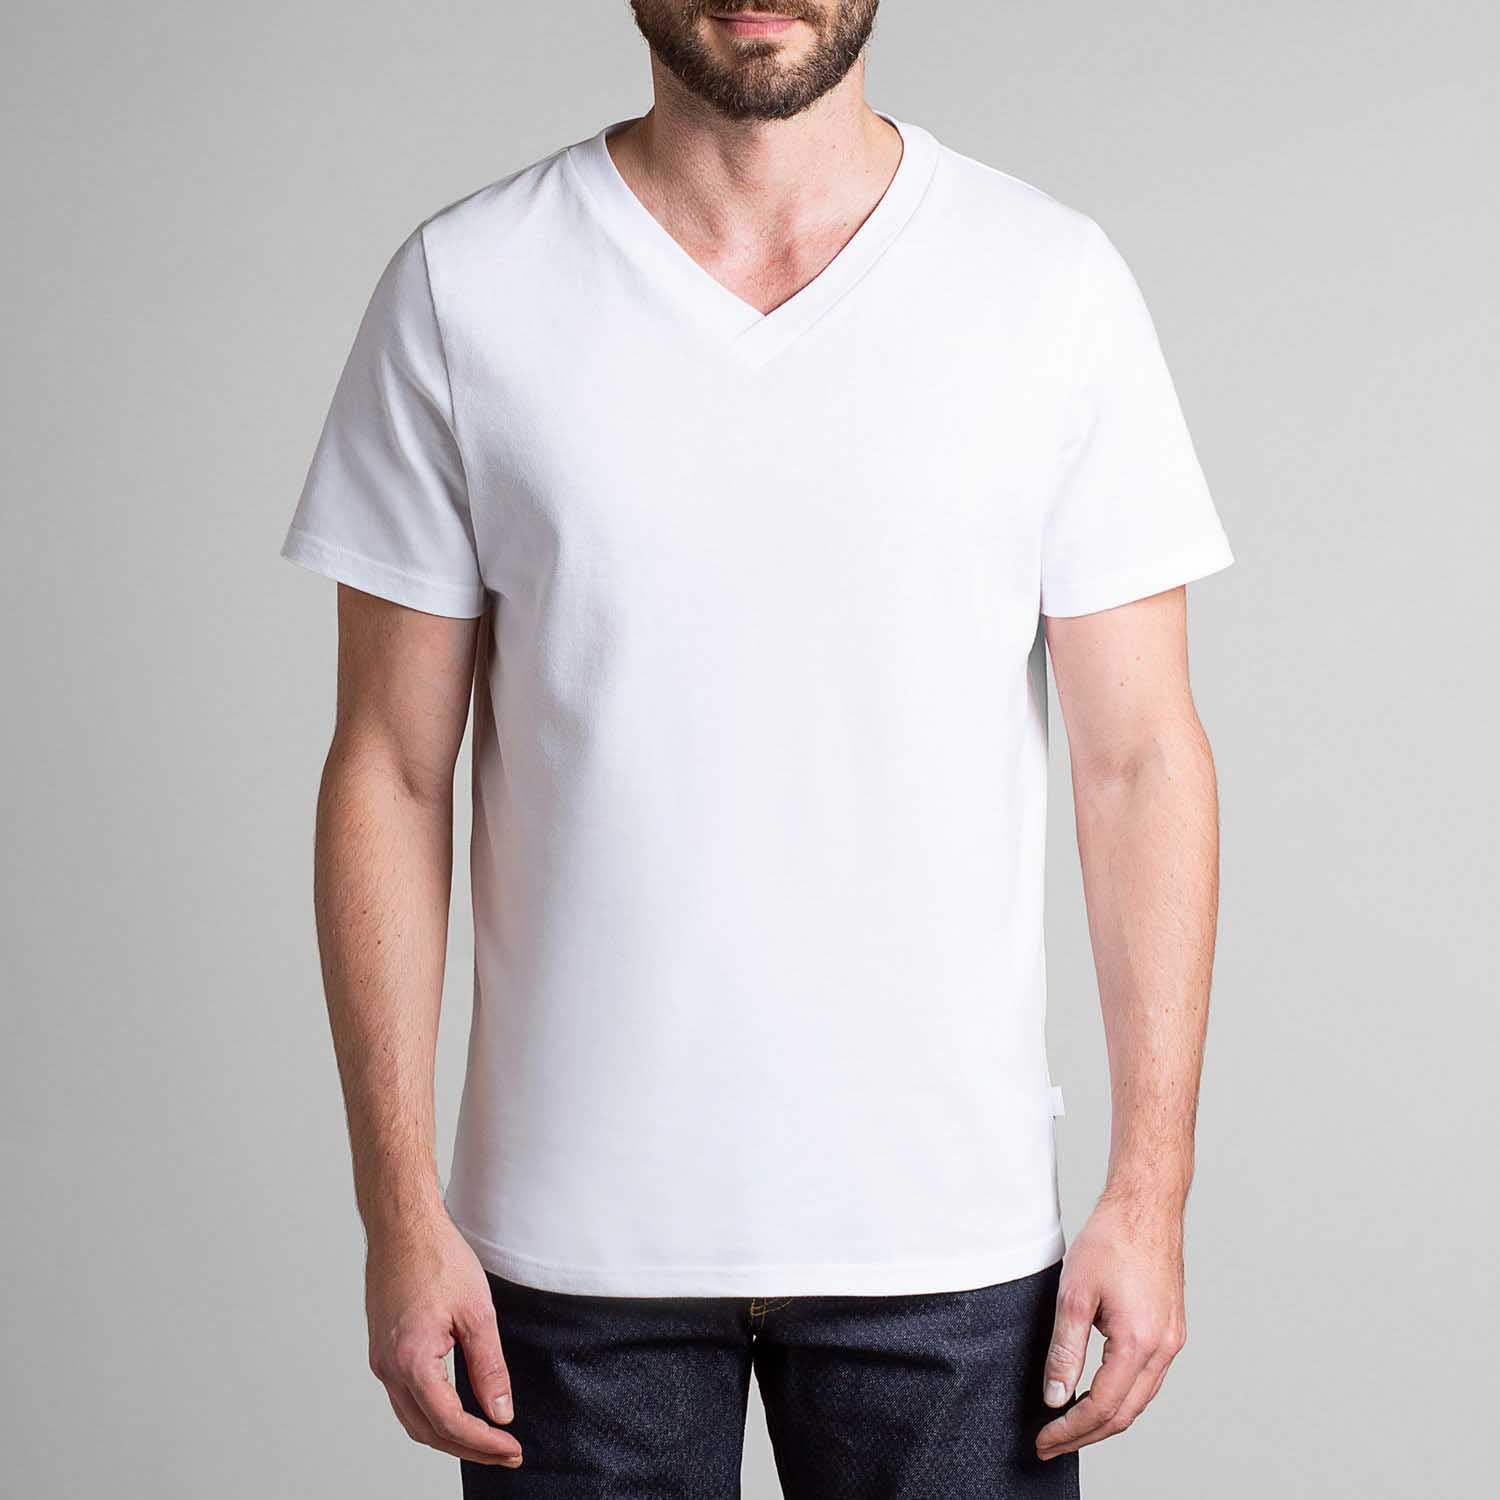 T-shirt en coton manches courtes blanc homme